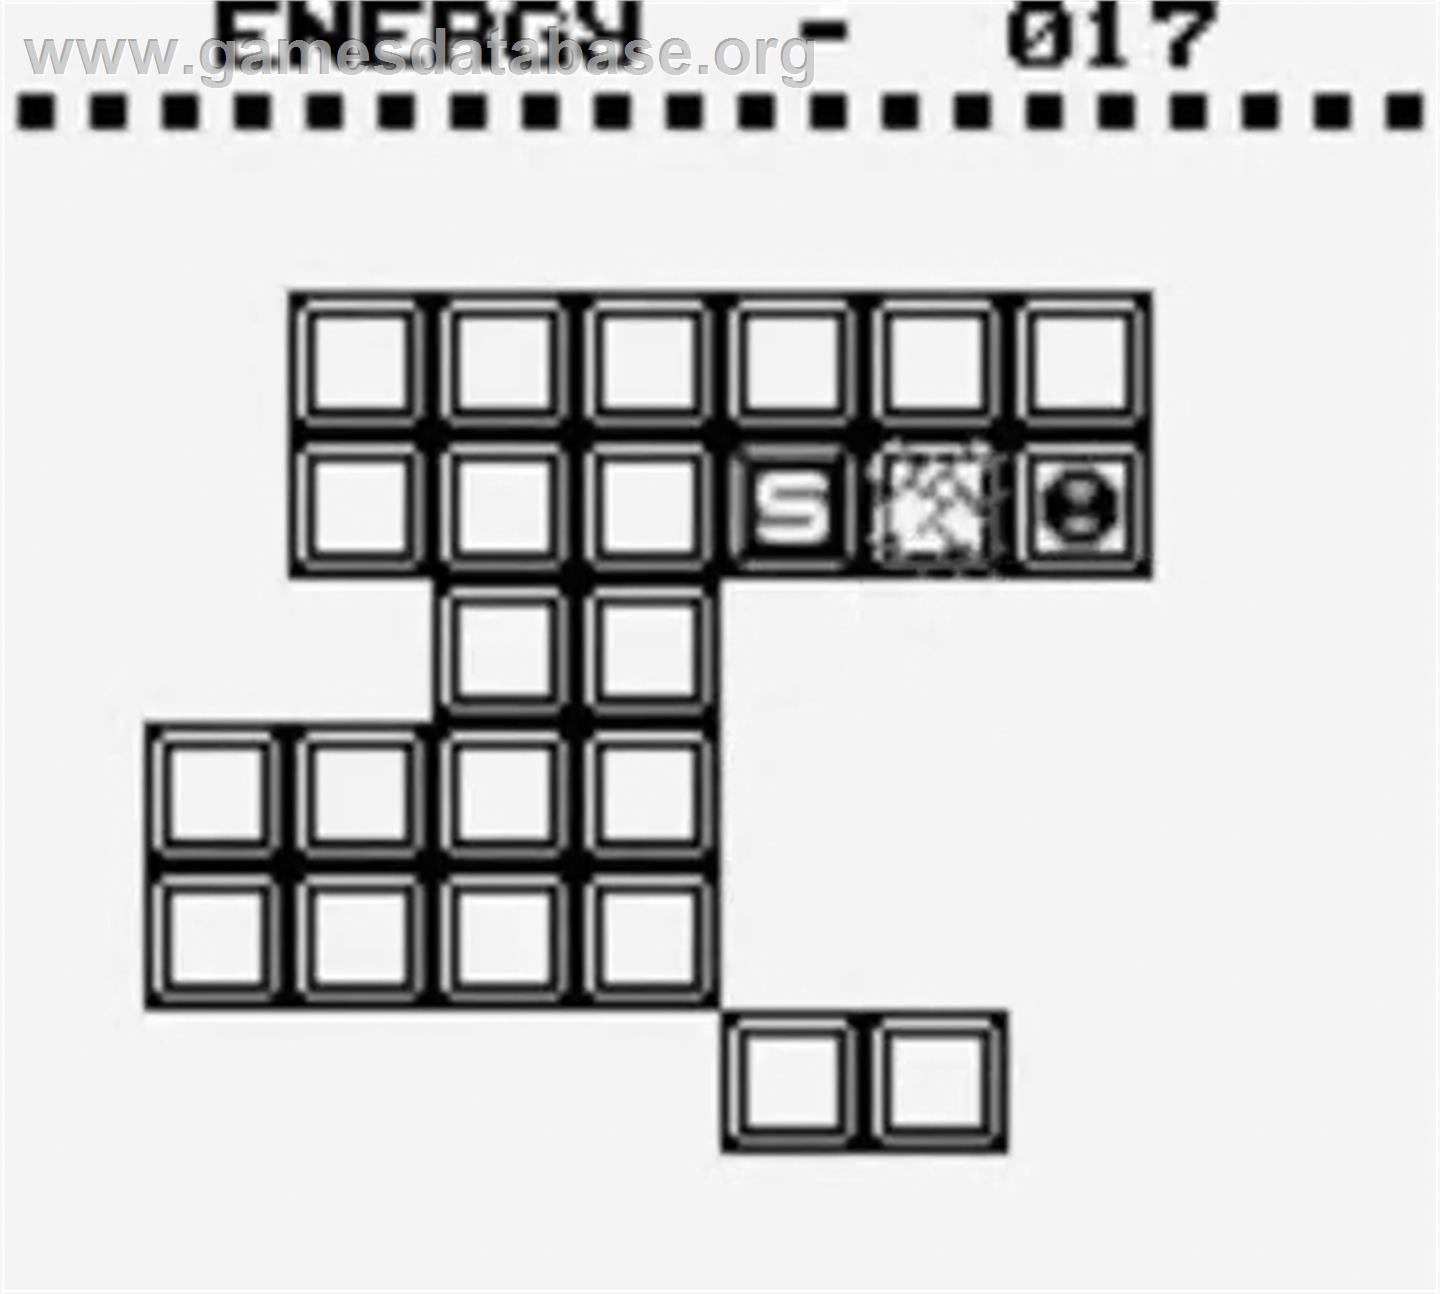 Pyramids of Ra - Nintendo Game Boy - Artwork - In Game